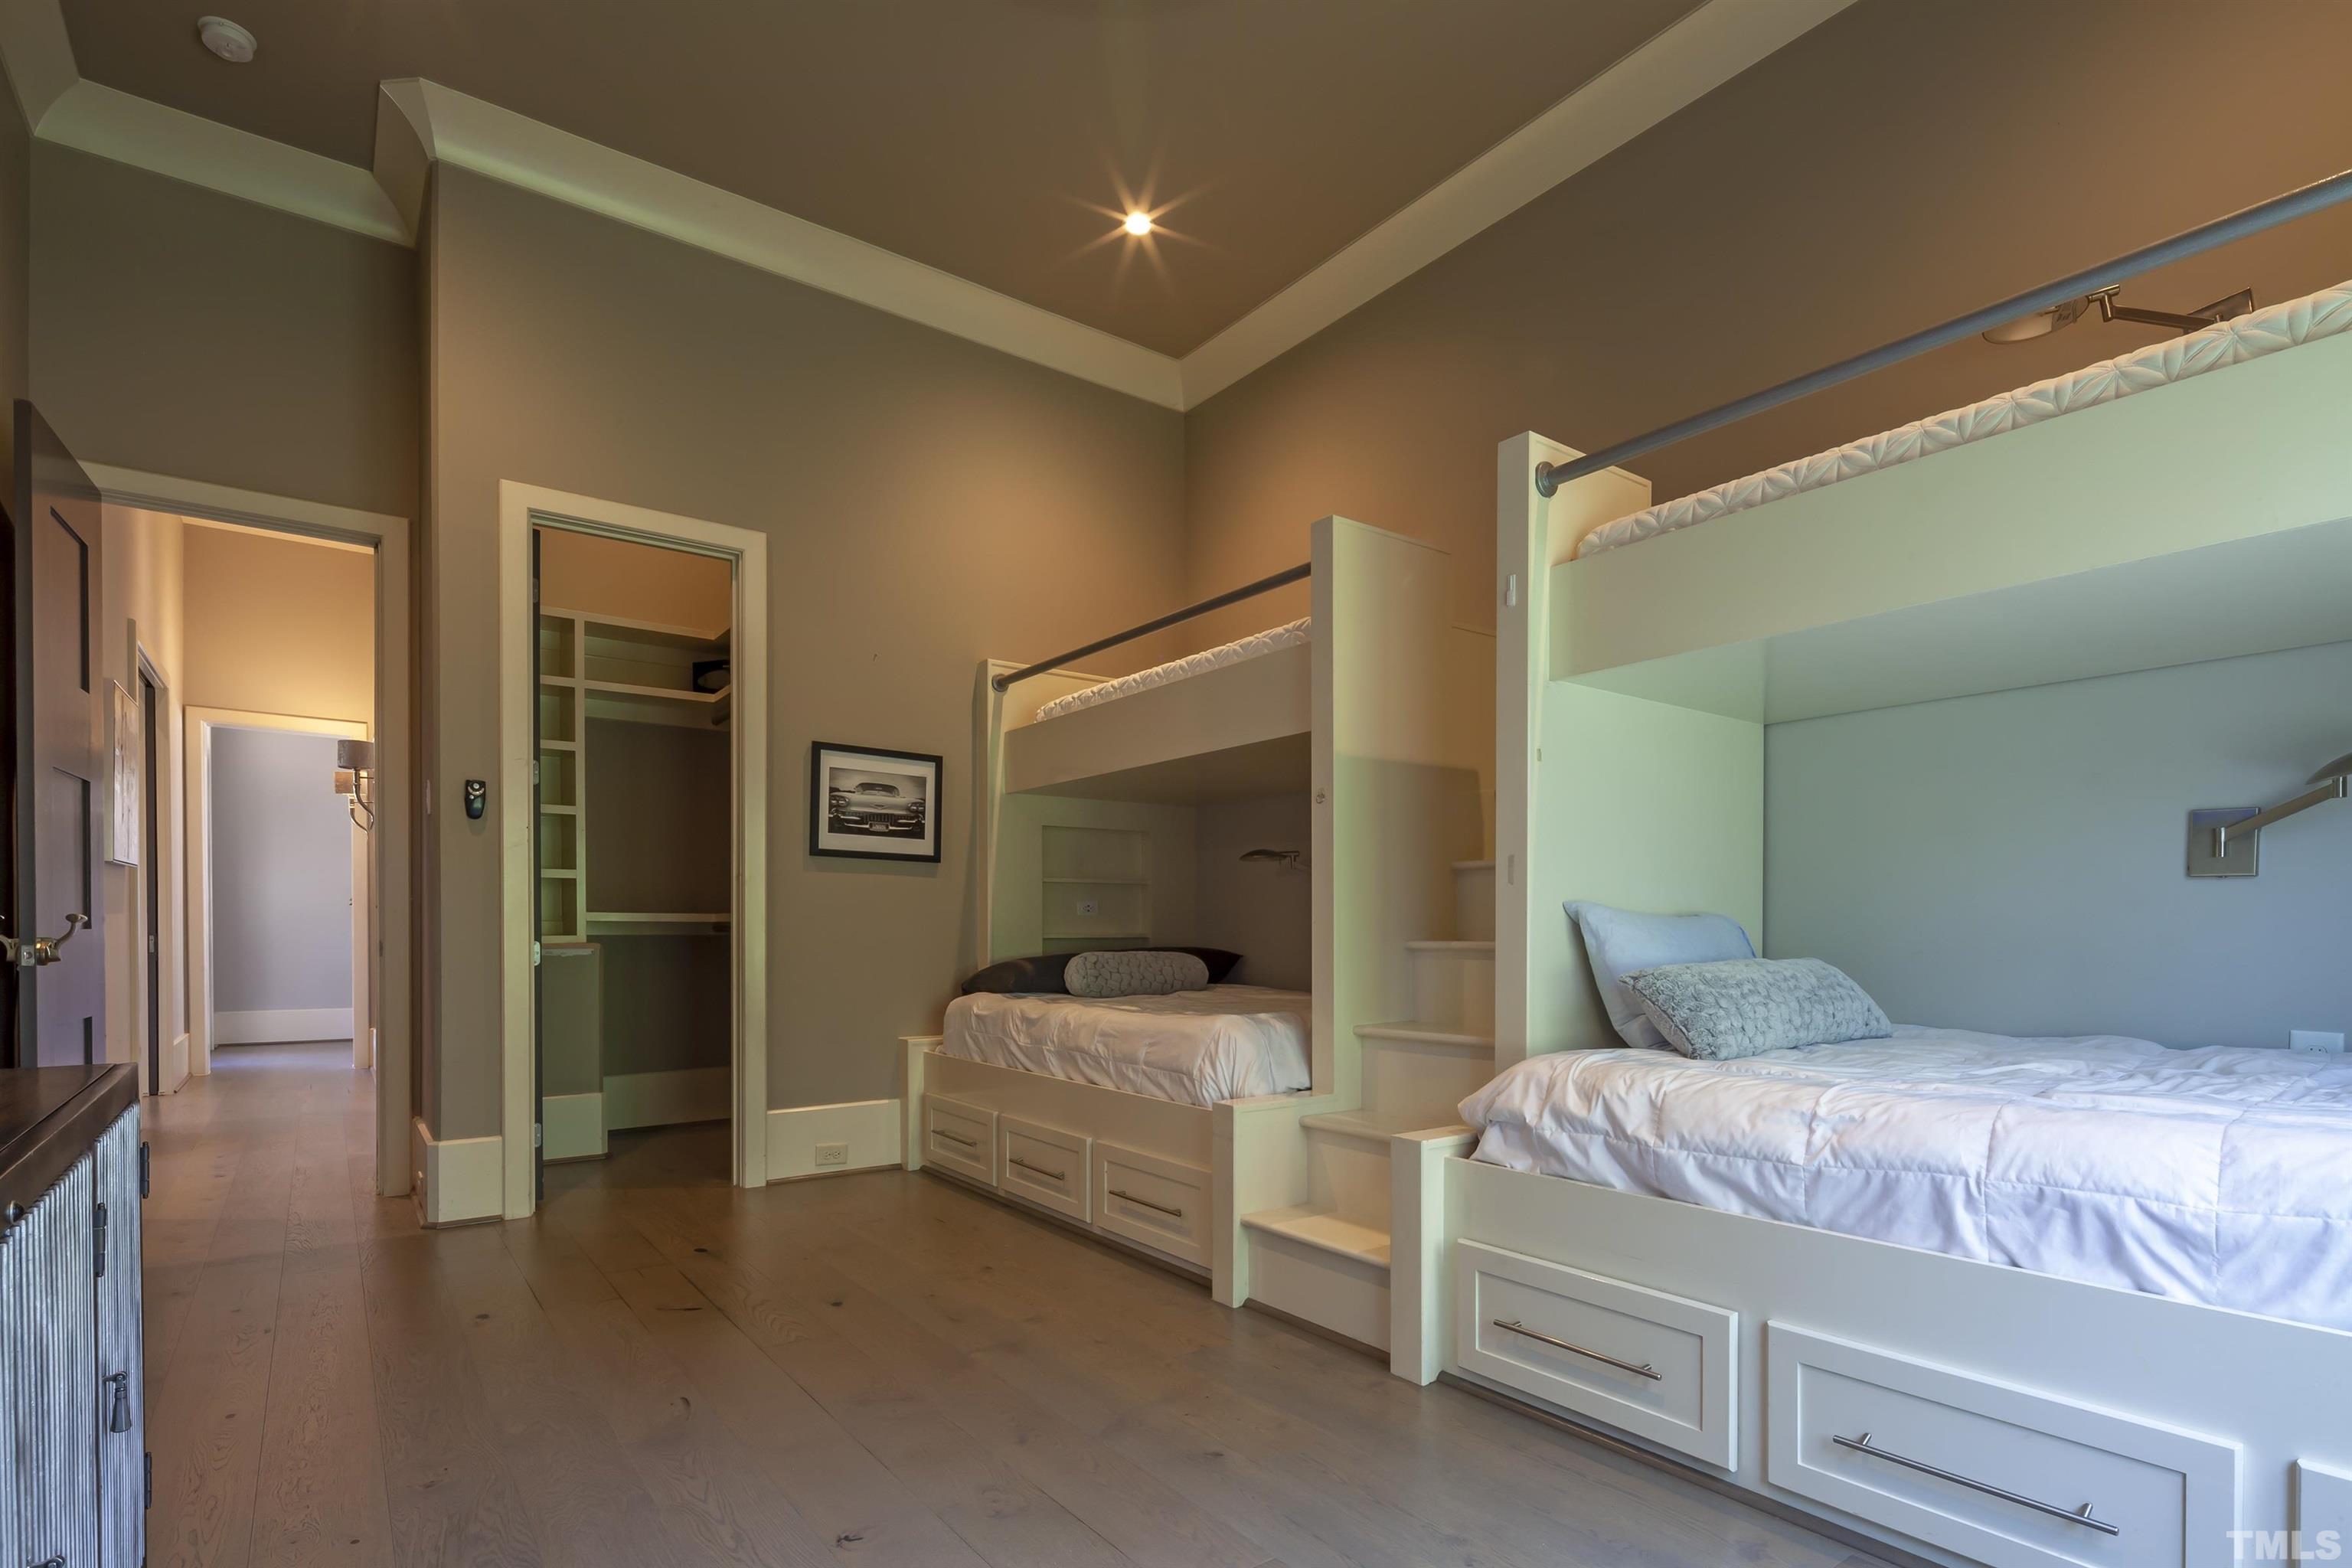 Bedroom Suite with Built-In Bunk Beds.